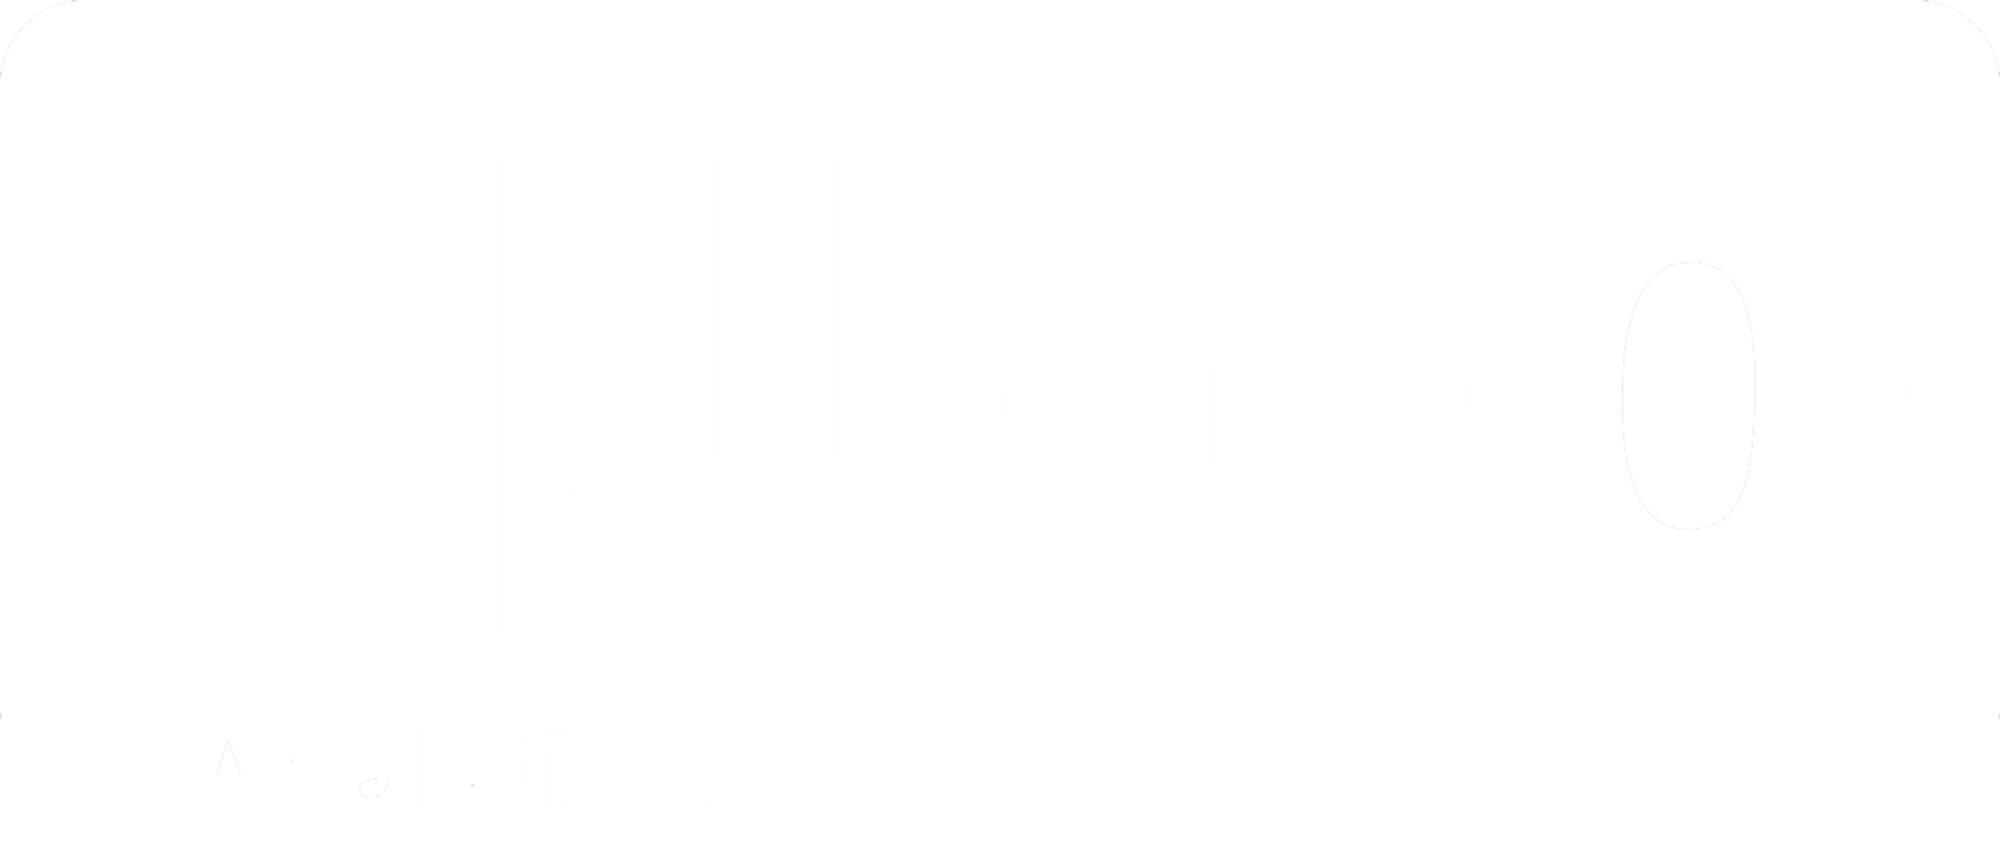 Hugo Analytics, LLC